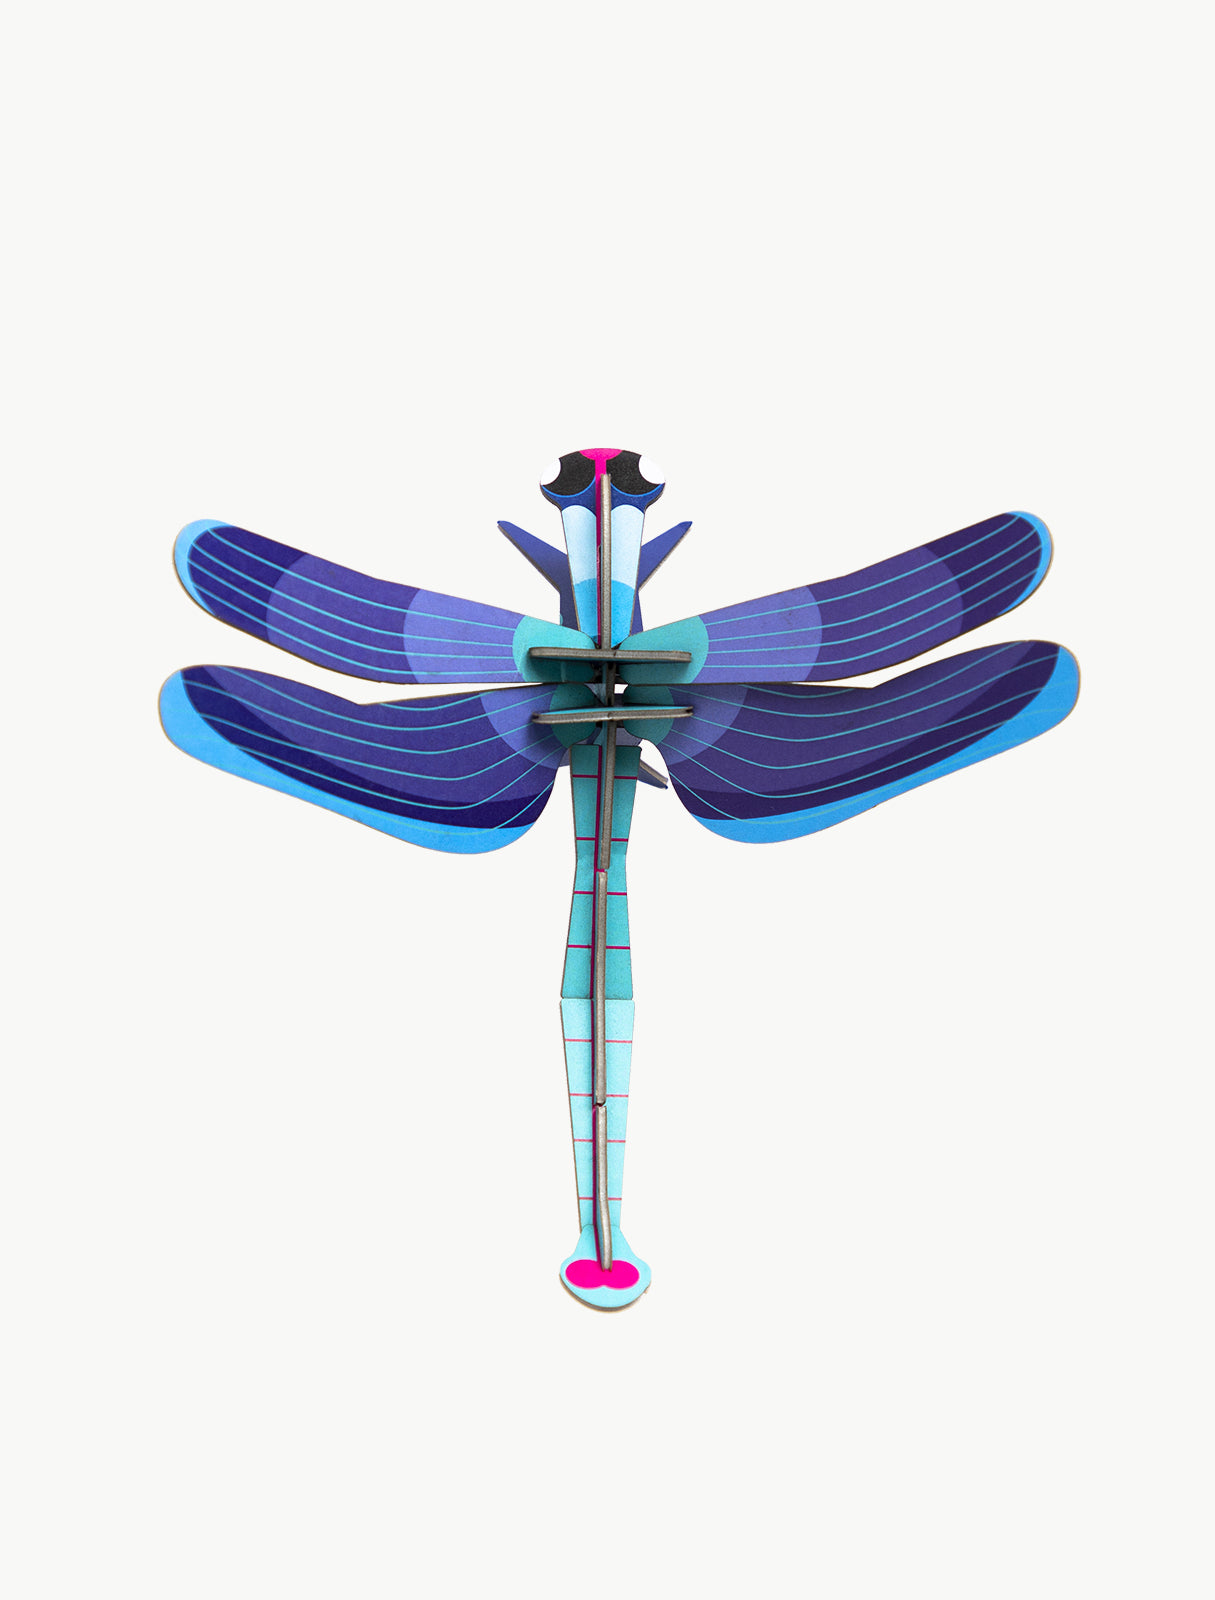 Studio ROOF – Nástěnná dekorace Sapphire Dragonfly / malá safírová vážka